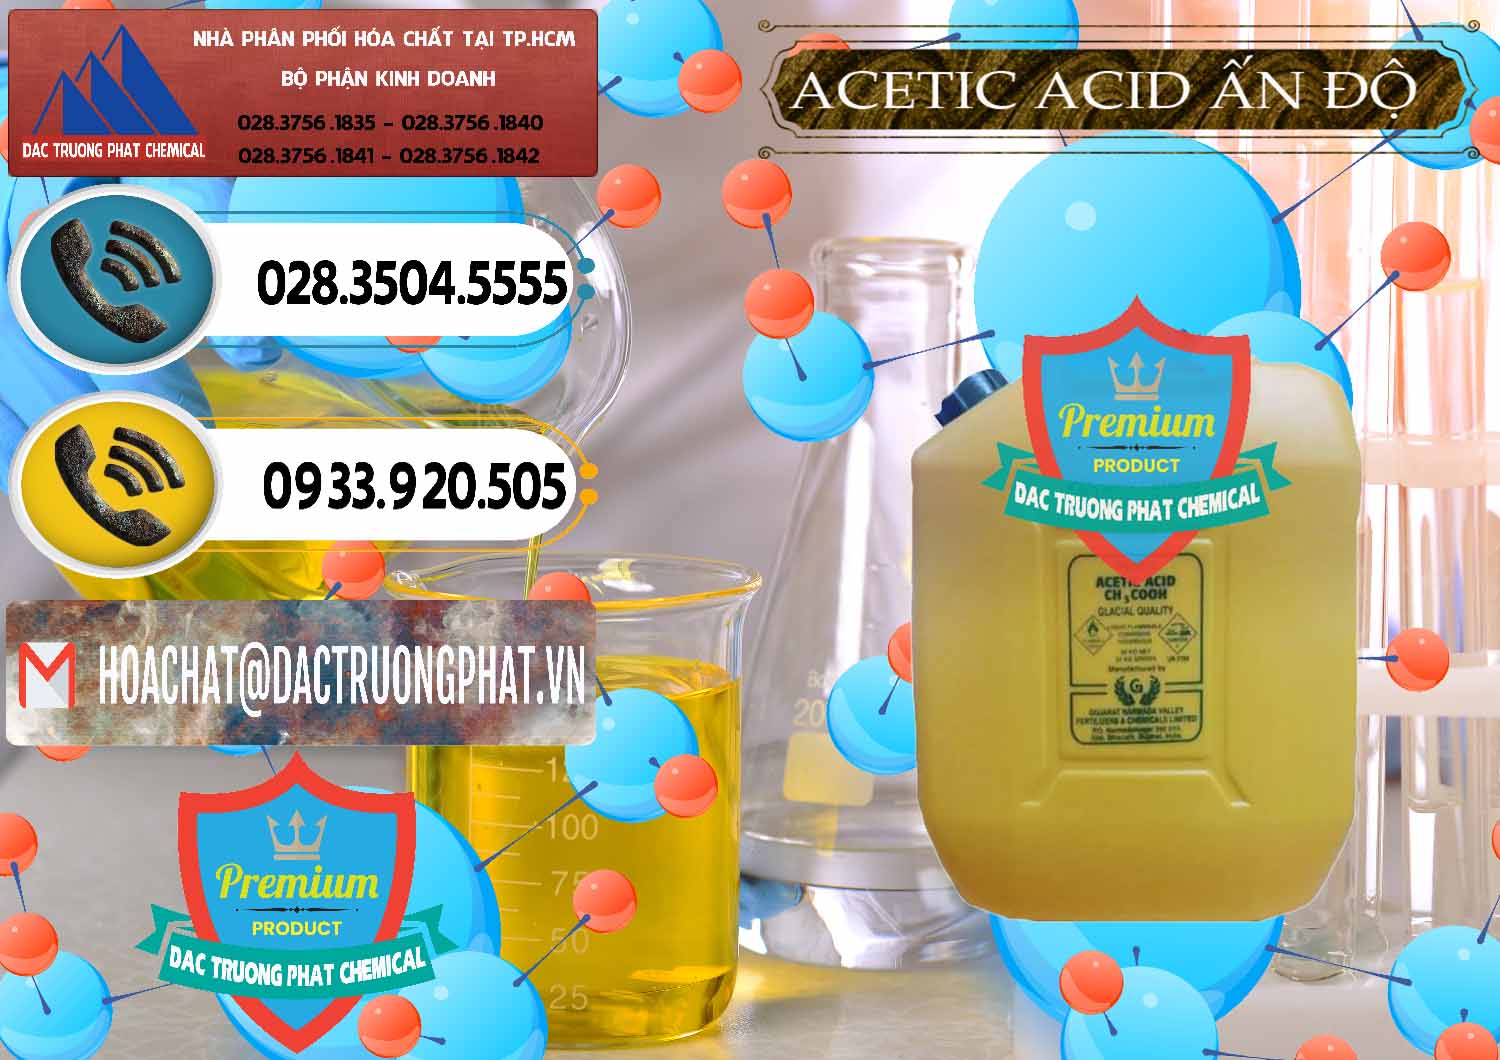 Đơn vị bán và cung cấp Acetic Acid – Axit Acetic Ấn Độ India - 0359 - Phân phối - nhập khẩu hóa chất tại TP.HCM - hoachatdetnhuom.vn